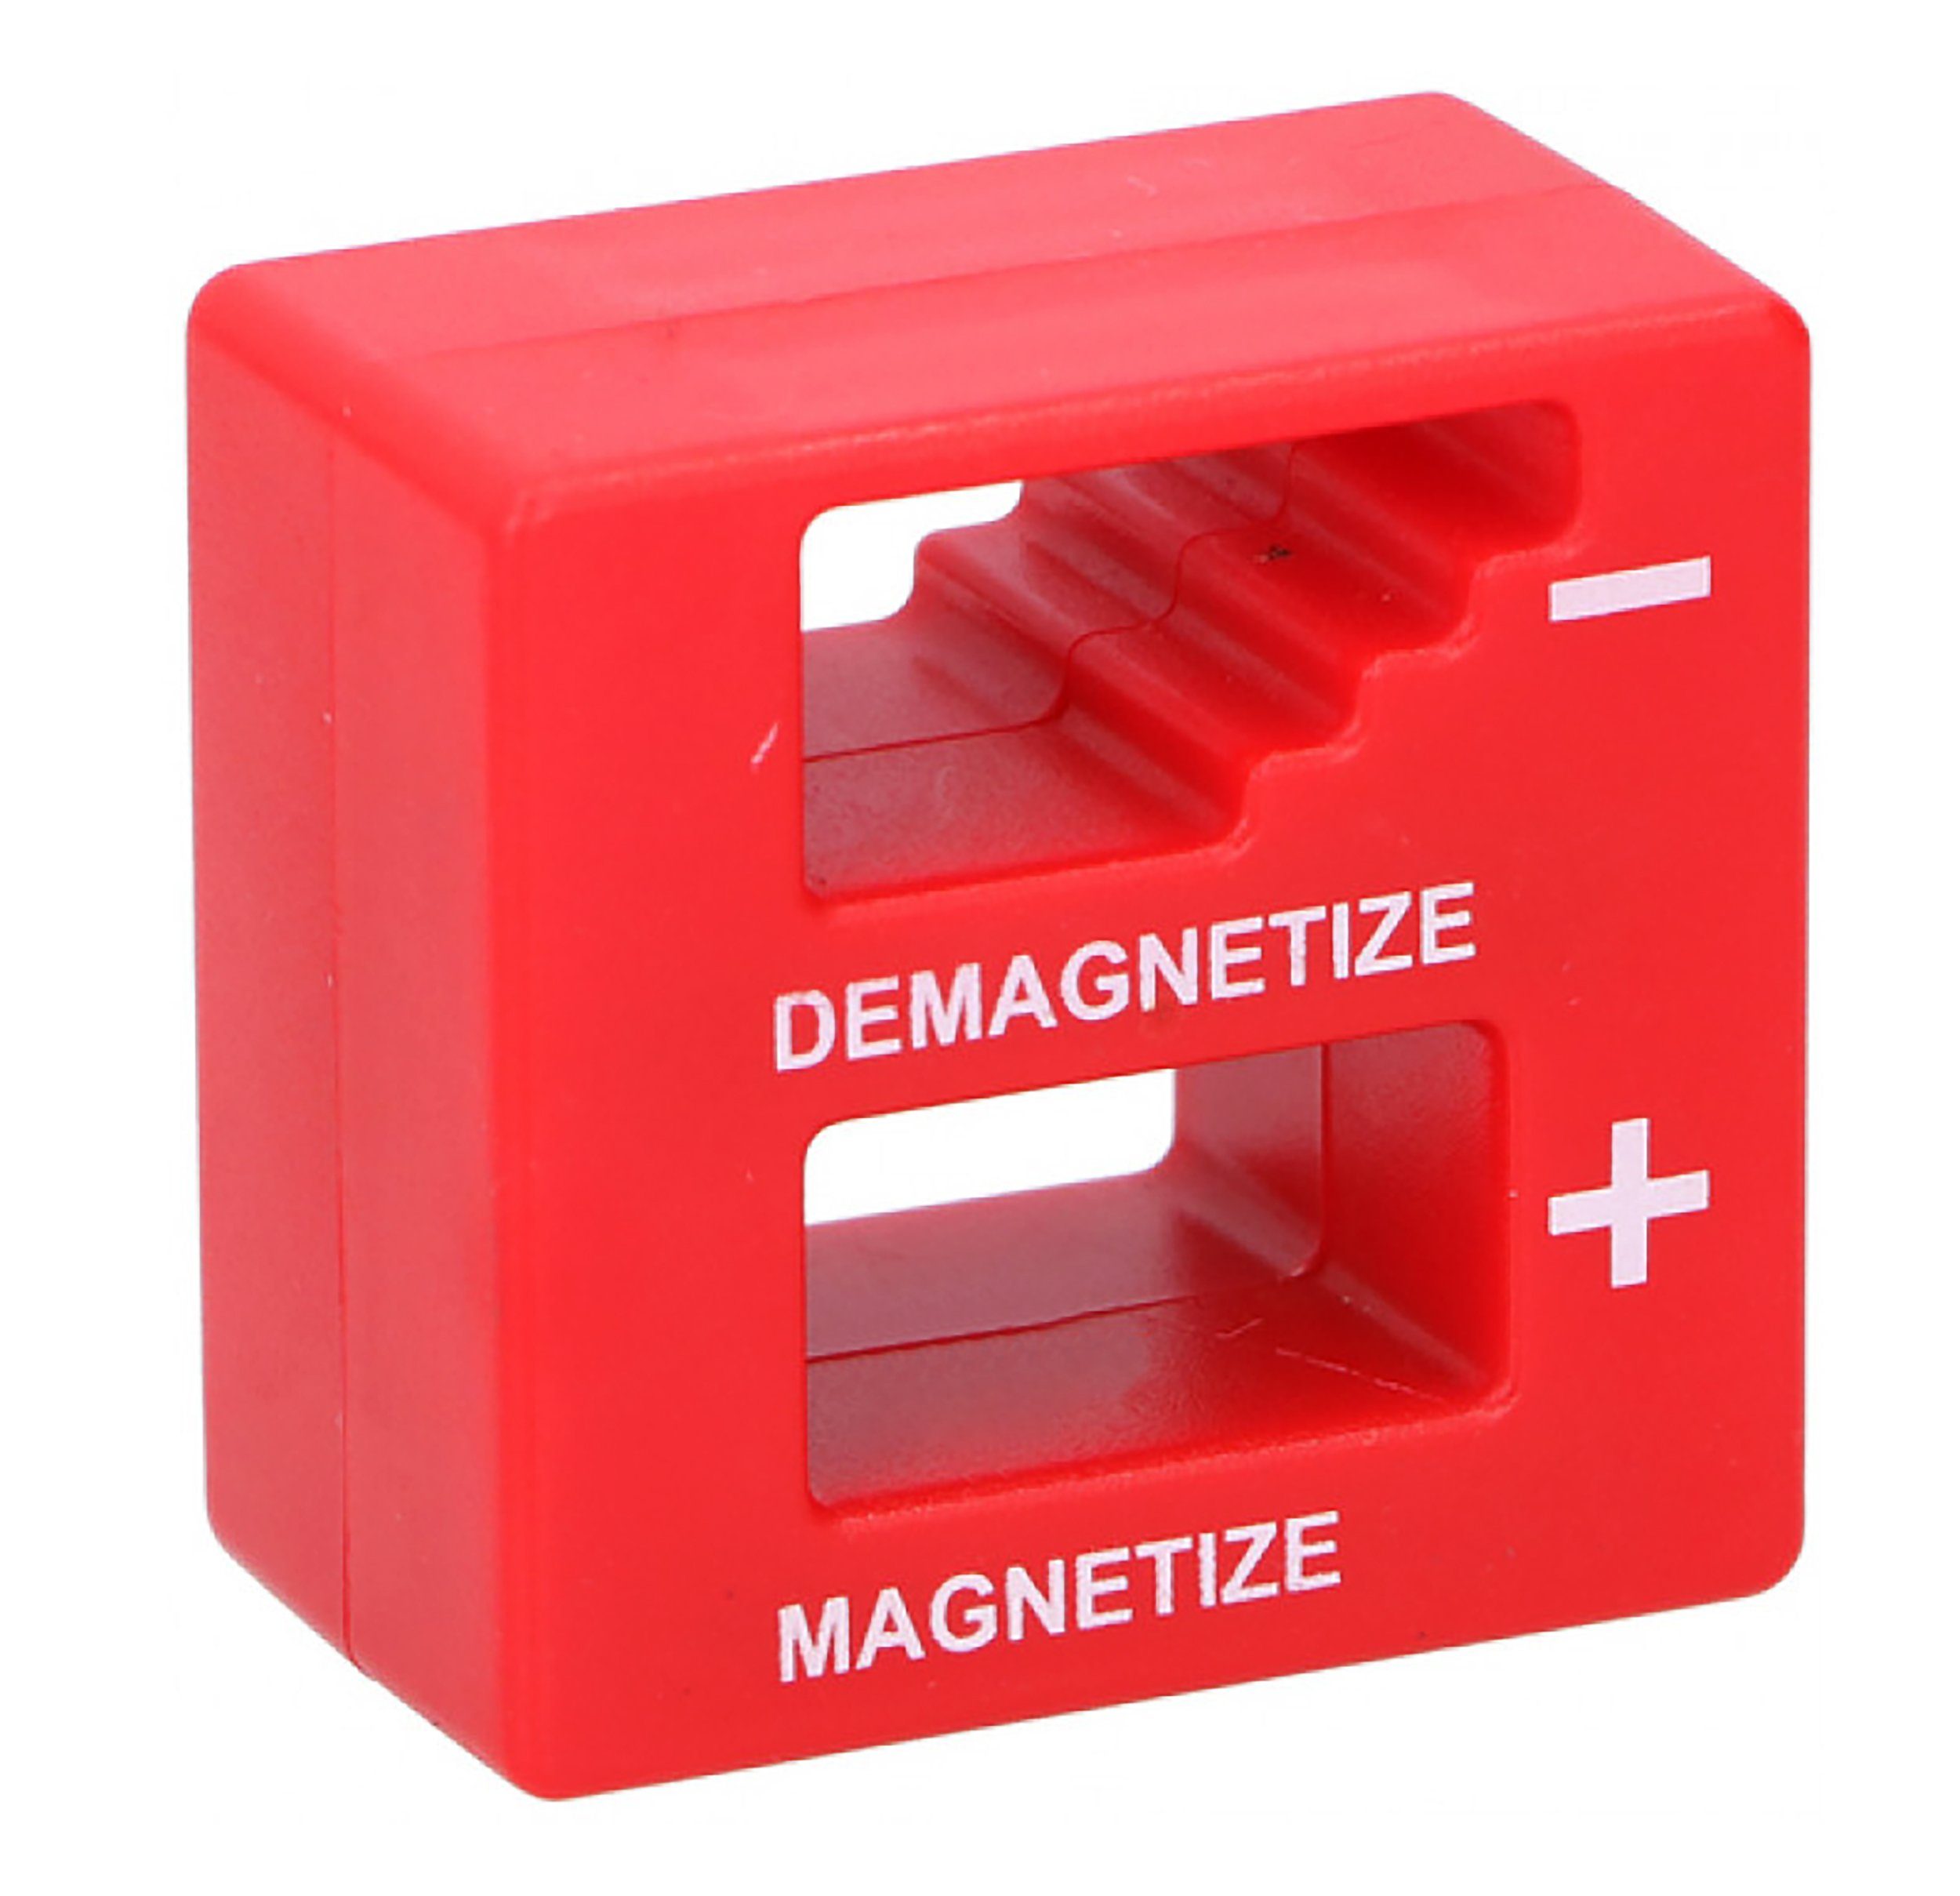 Magnet MAGNETISIERER ENTMAGNETISIERER Rot 45x45mm Magnetisiergerät magnetisieren entmagnetisieren Magnetisierung Gerät Schraubendreher Schraubenzieher Bits 57